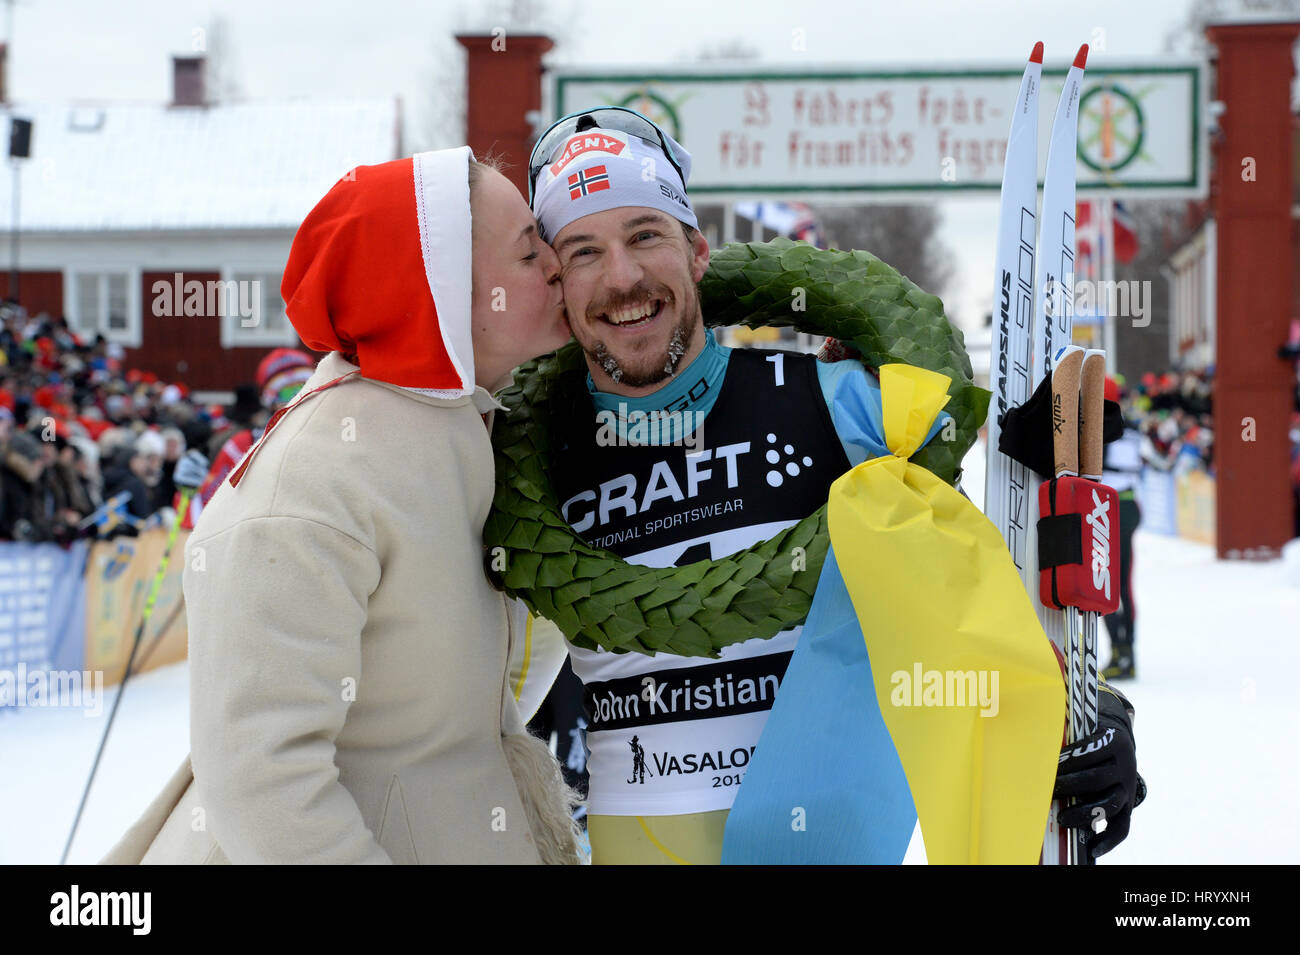 Stoccolma. 6 Mar, 2017. Norvegia John Kristian Dahl (R) pone per le foto dopo aver vinto uomini della Vasaloppet cross-country ski champion race nella regione di Dalarna della Svezia centrale, 5 marzo 2017. Credito: Xinhua/Alamy Live News Foto Stock